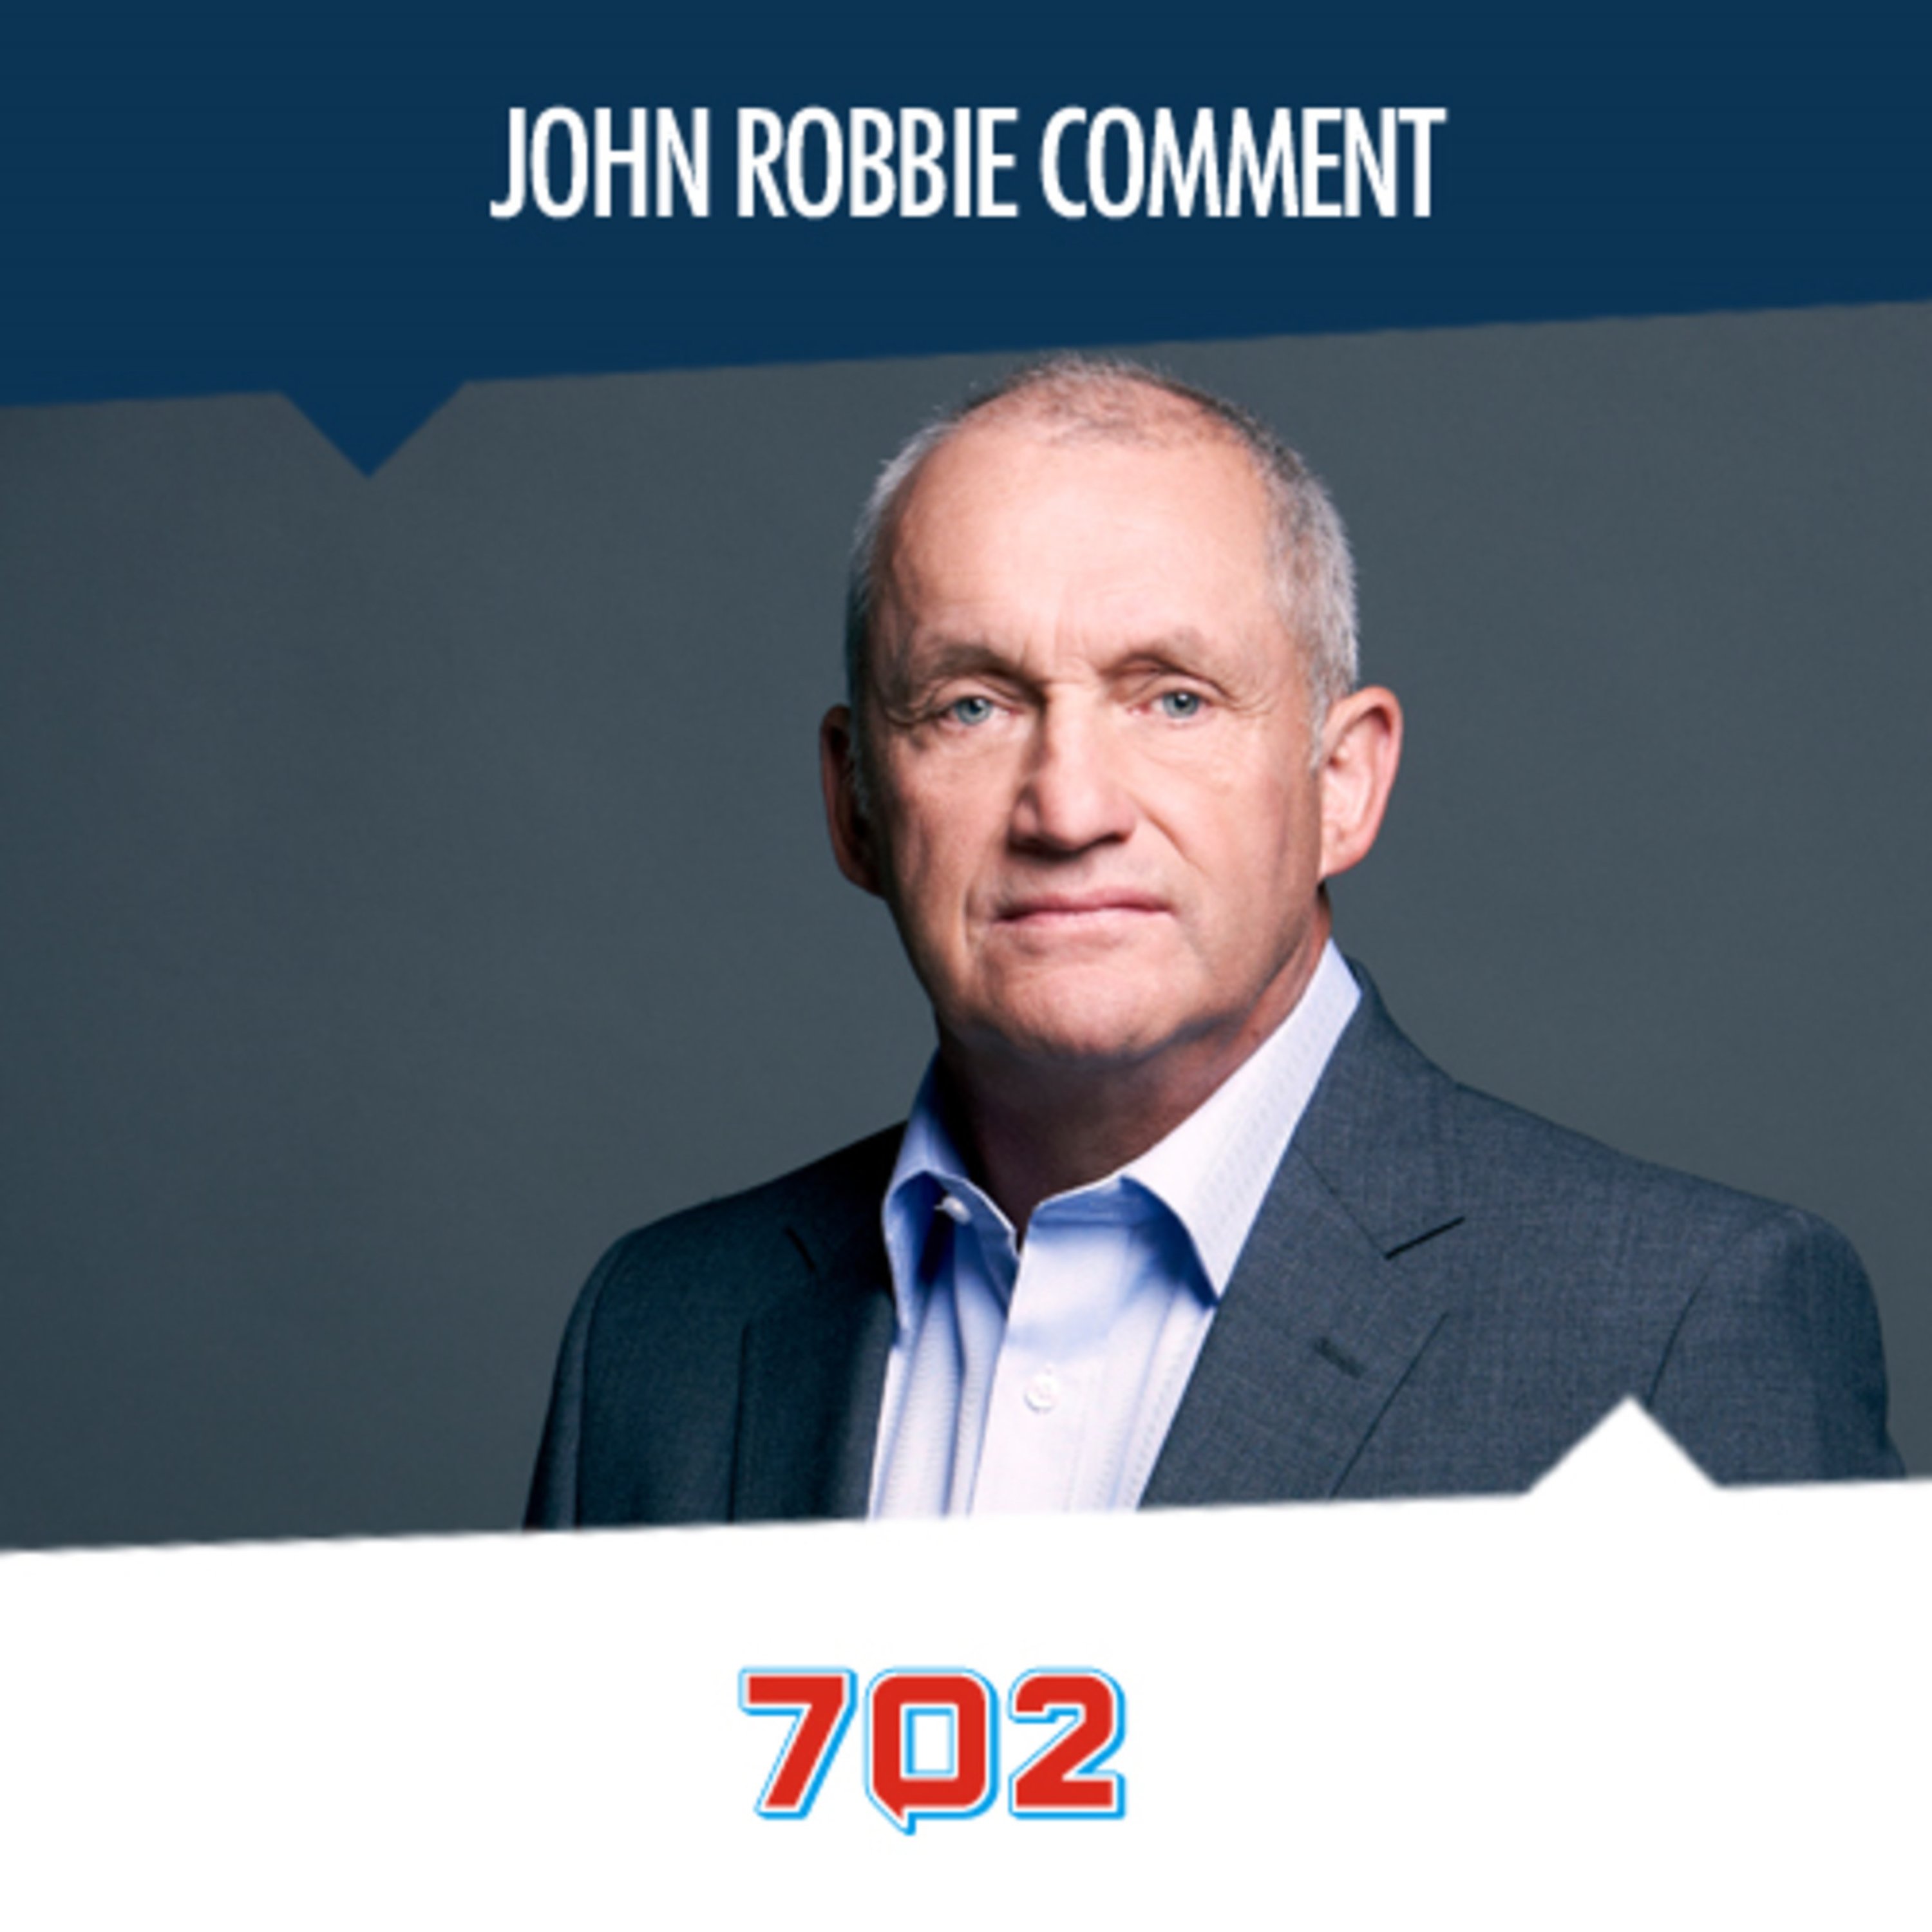 John Robbie's Comment